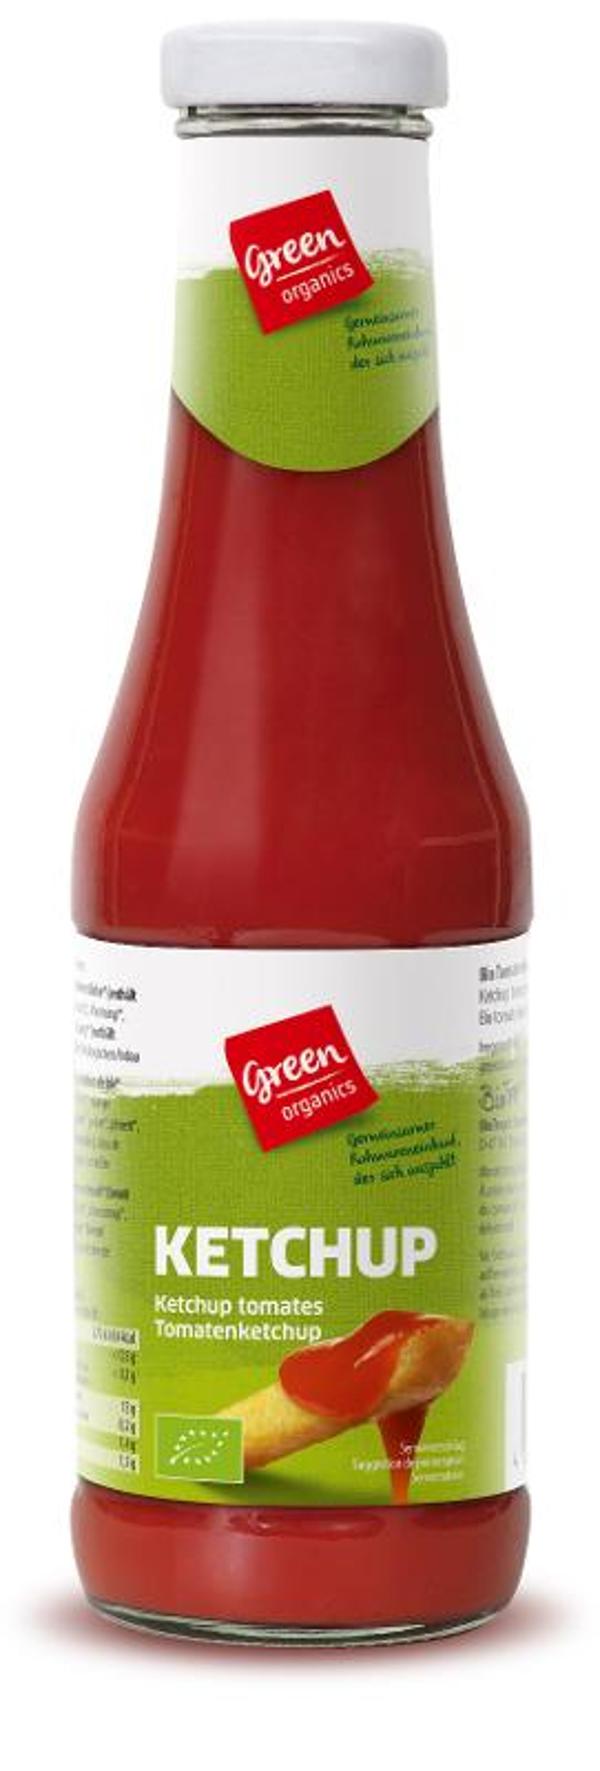 Produktfoto zu green Ketchup